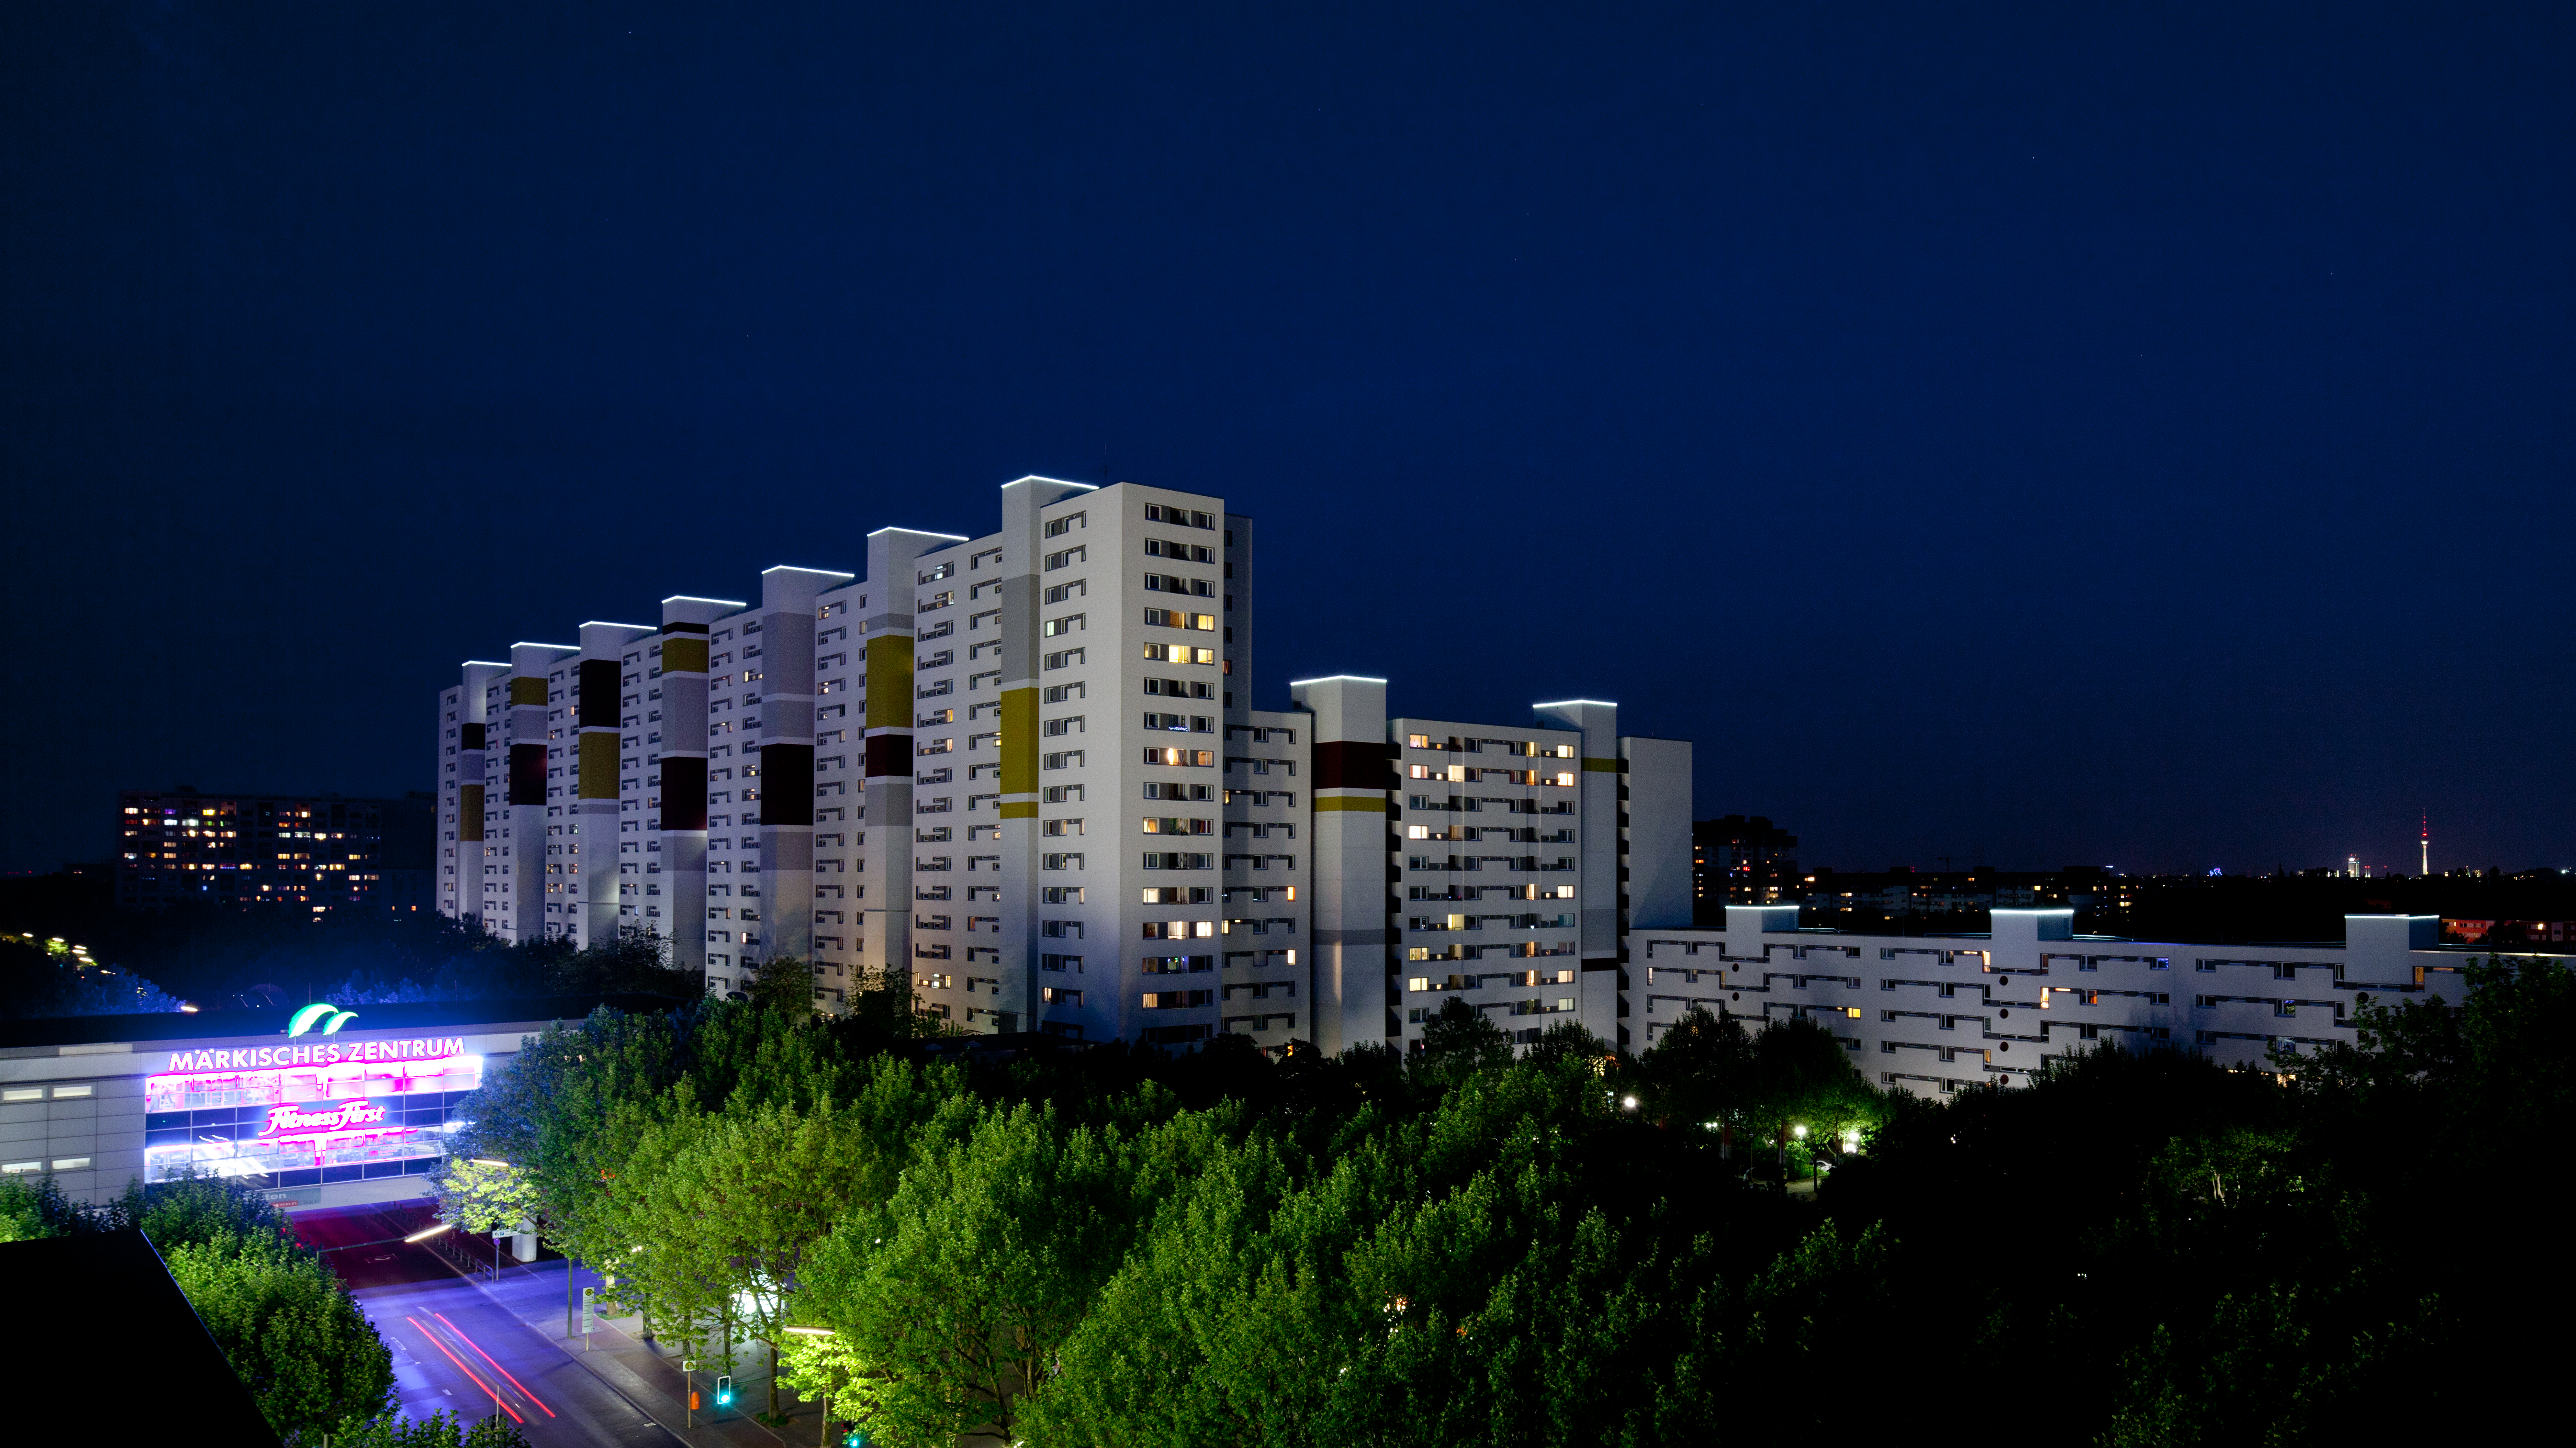 Außenaufnahme zeigt die markante Silhouette des Märkischen Viertel bei Nacht, im Vordergrund links zu sehen ist das Märkische Zentrum.